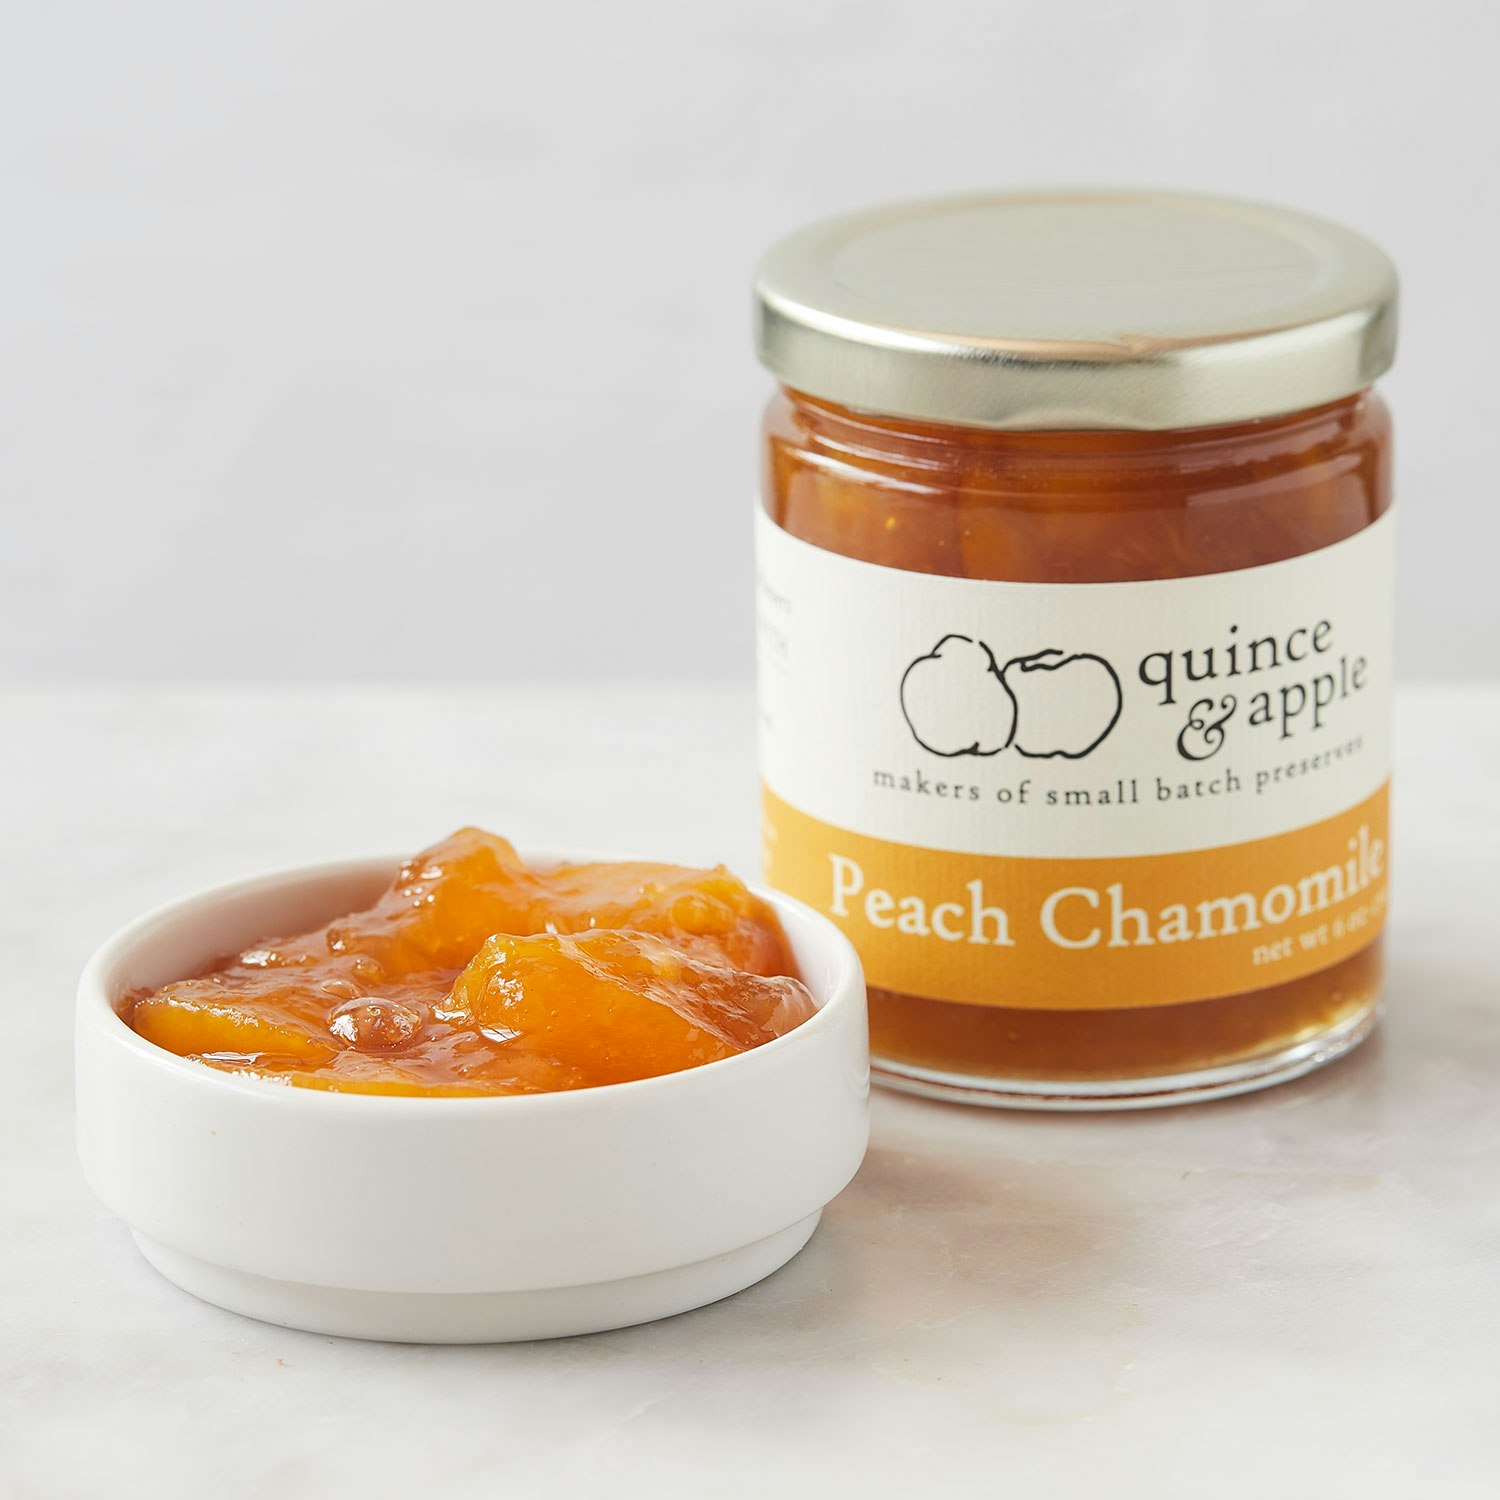 Quince & Apple Company Peach Chamomile Preserves